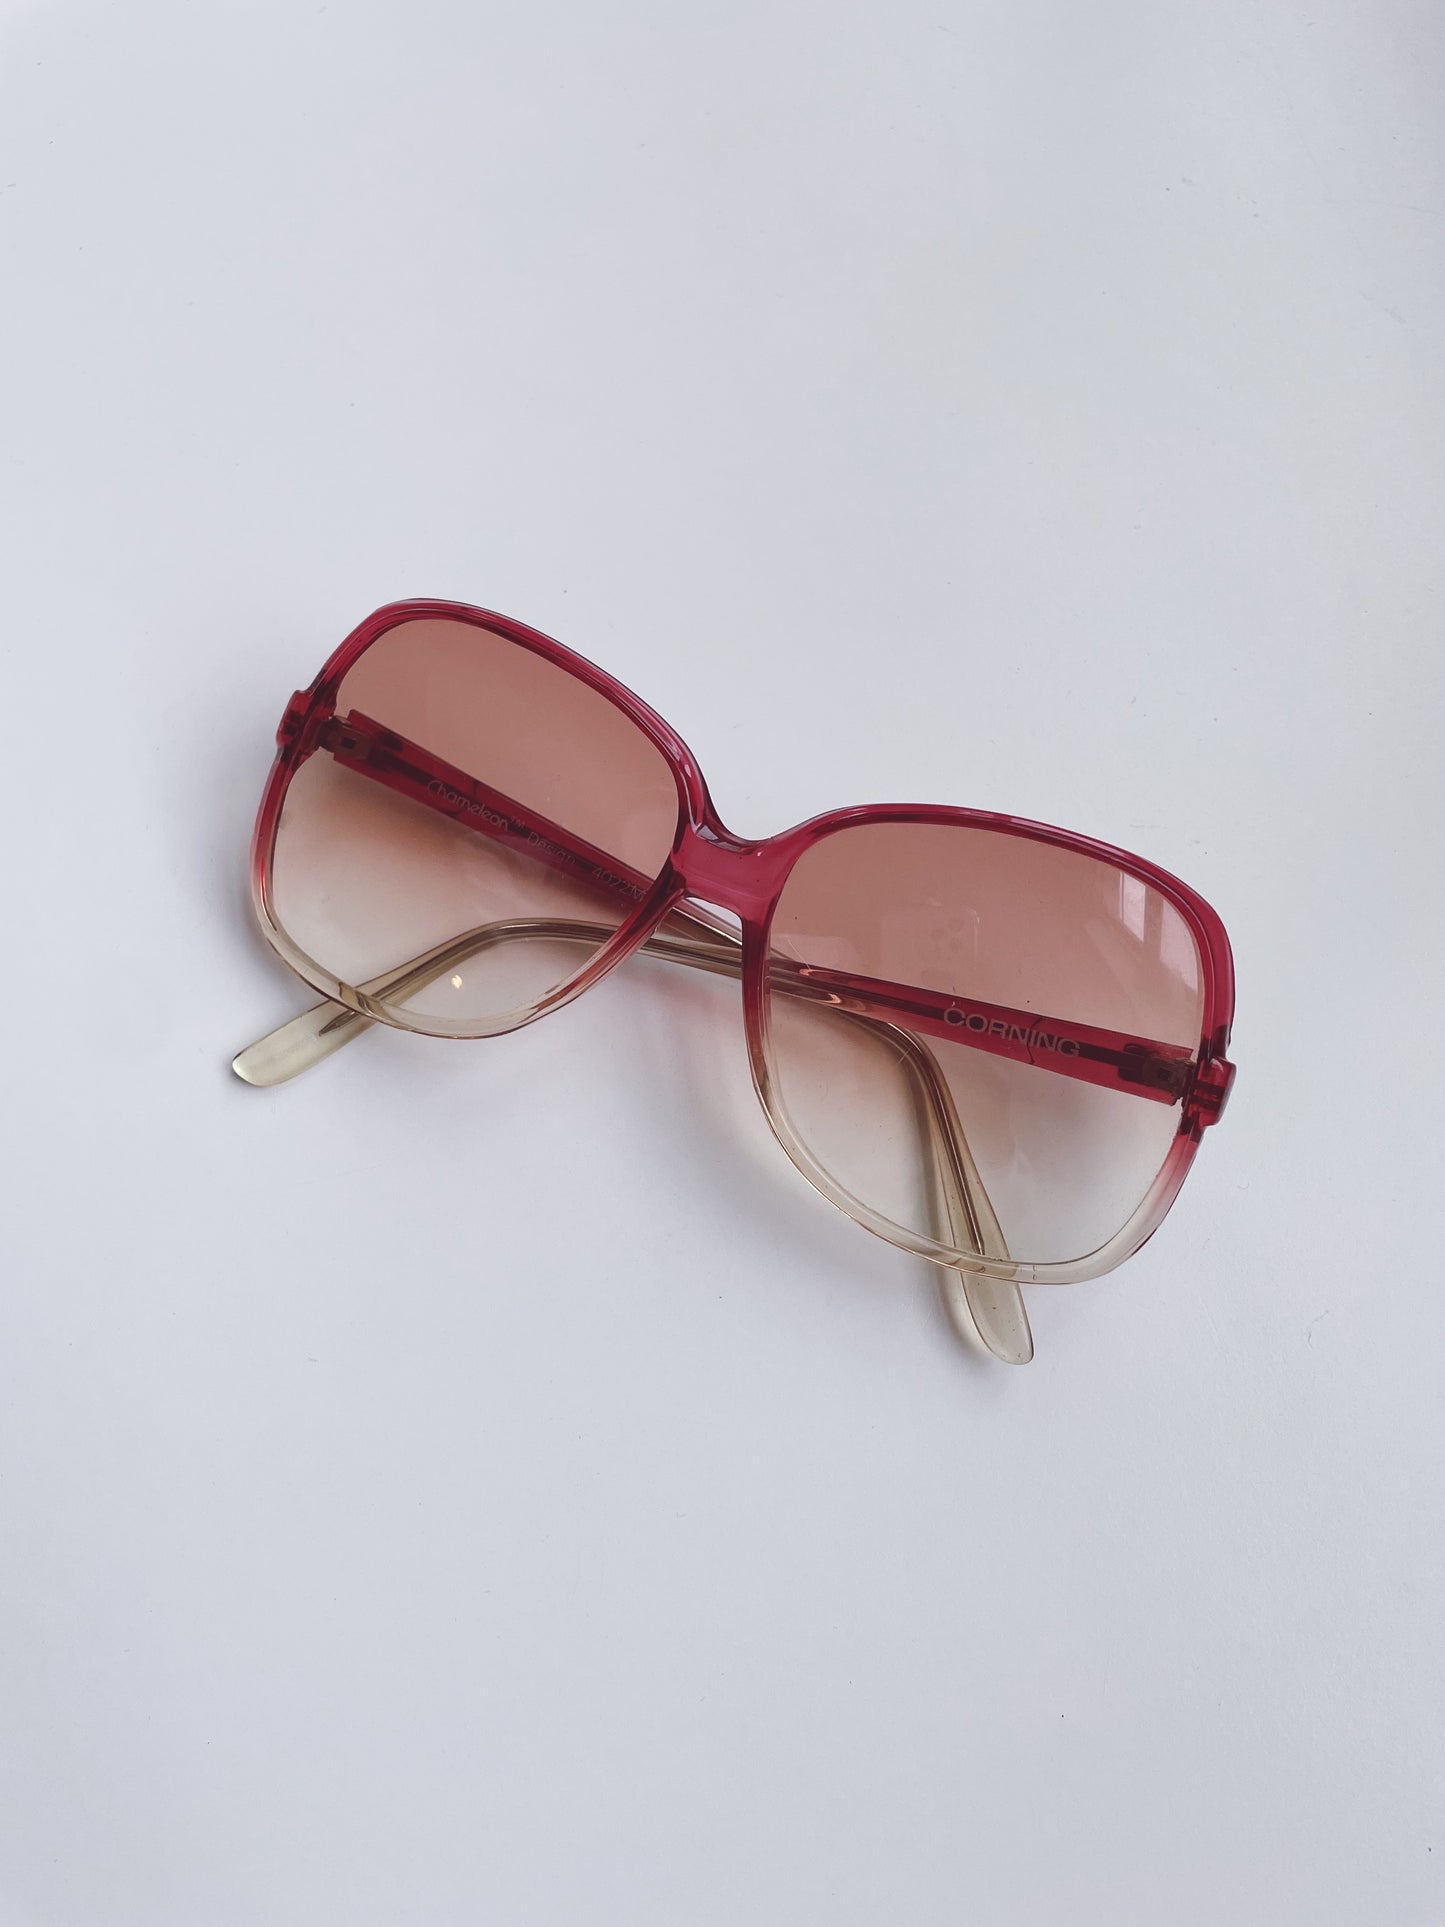 70s Chameleon Shades Sunglasses